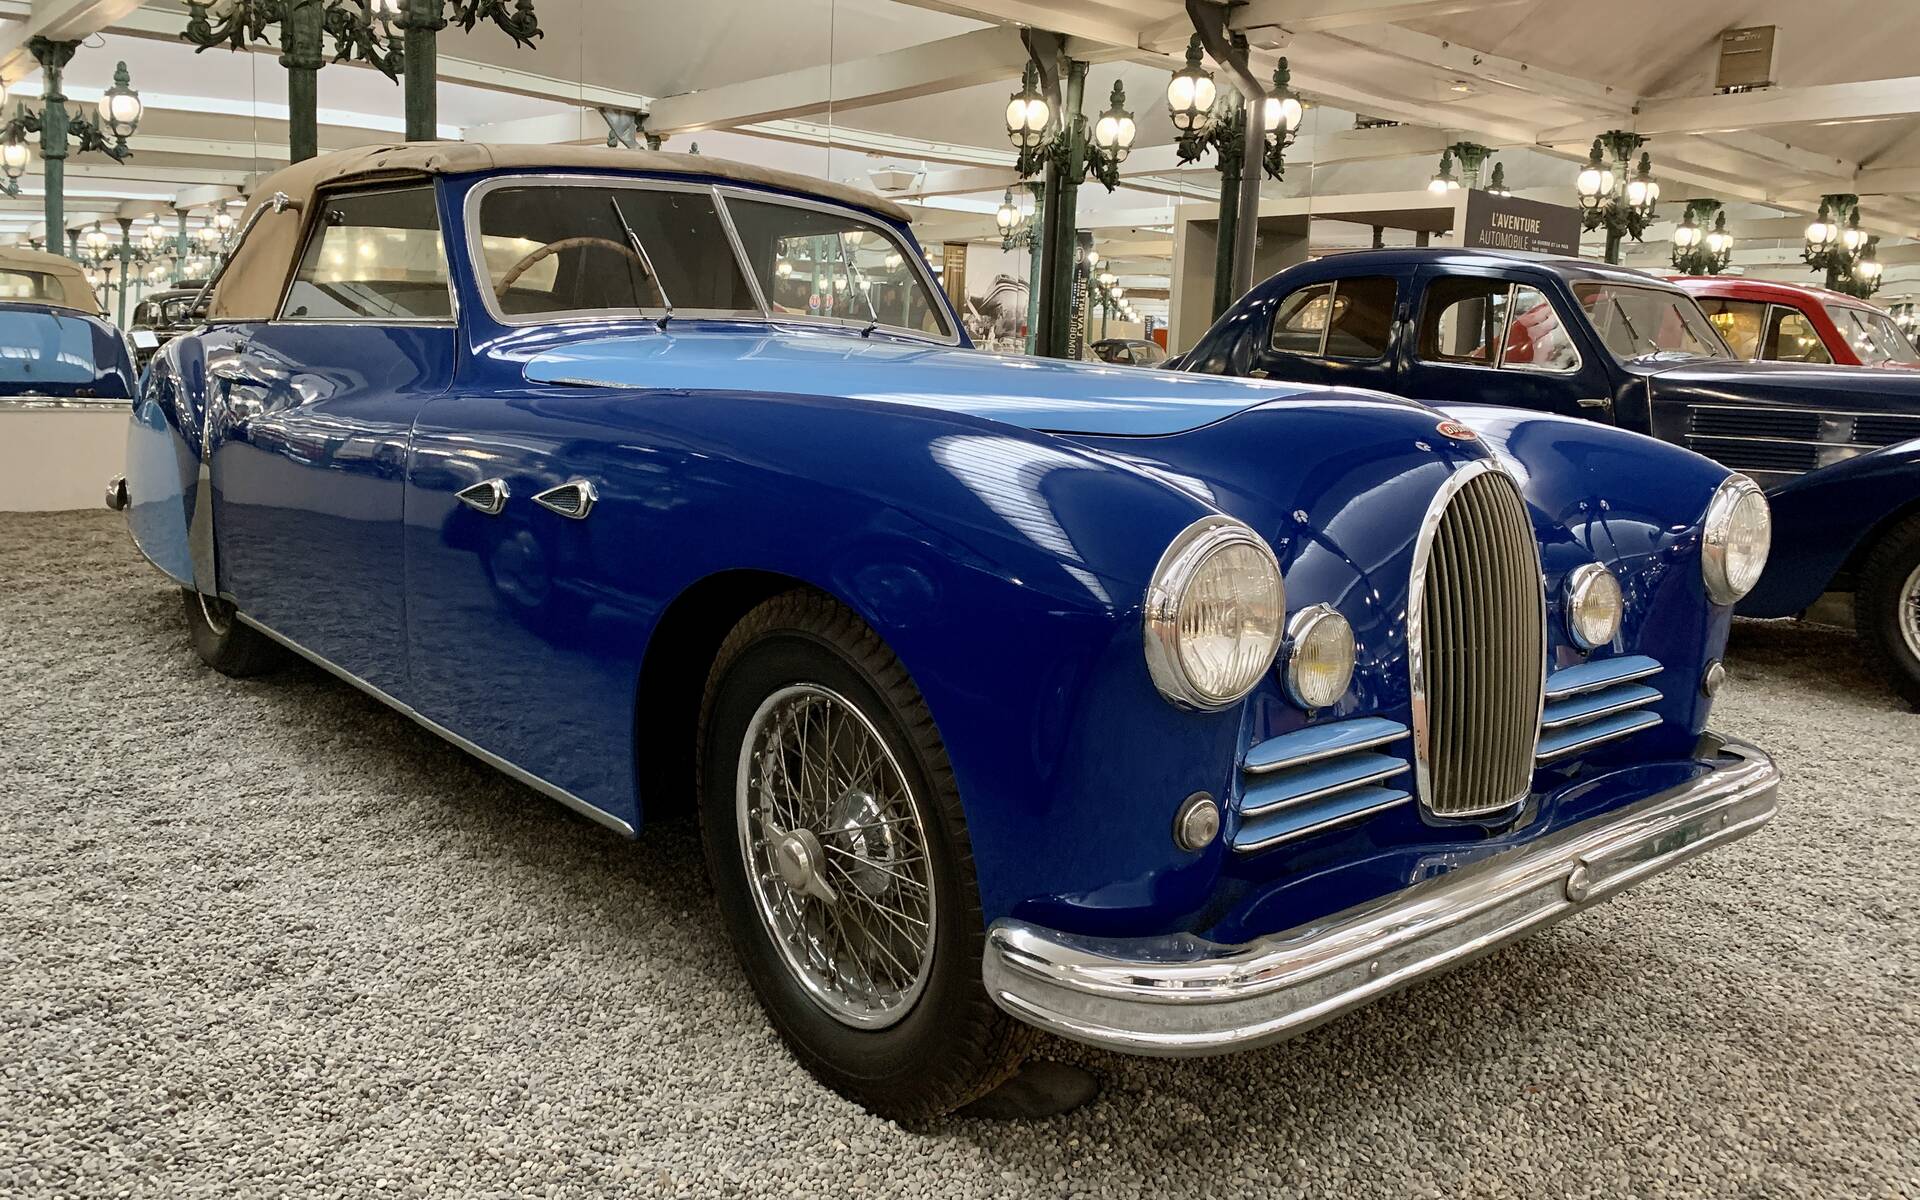 En photos : une centaine de Bugatti réunies dans un même musée 503062-en-photos-des-dizaines-de-bugatti-reunies-dans-un-meme-musee